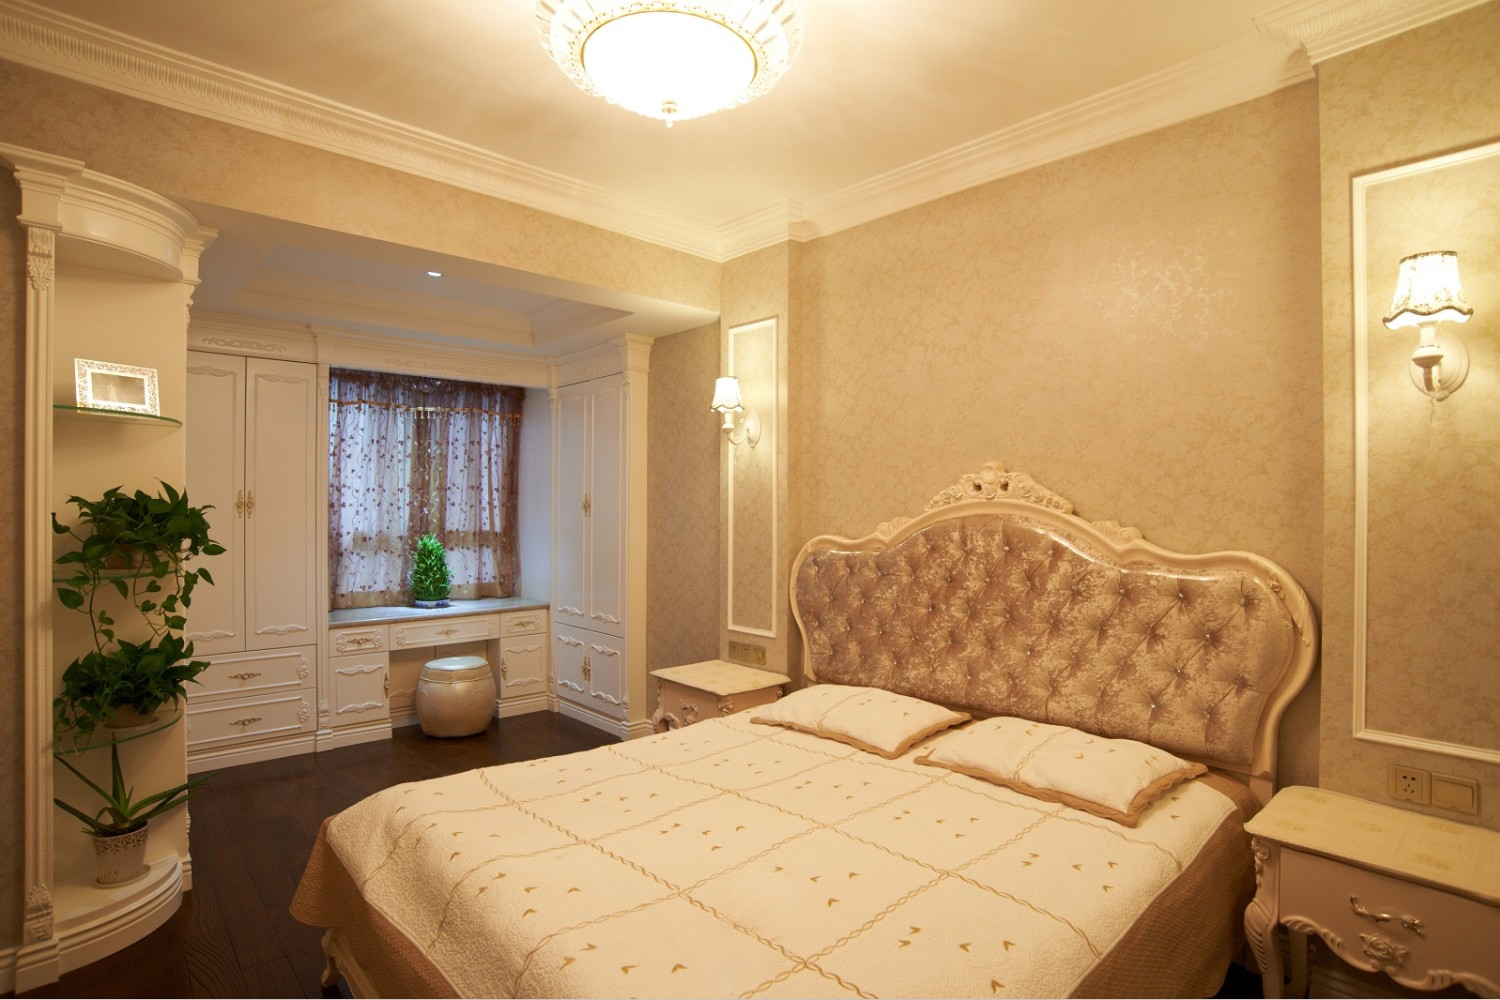 奢华 豪华 温馨 舒适 欧式风格 卧室图片来自成都生活家装饰在140平欧式奢华3居室的分享